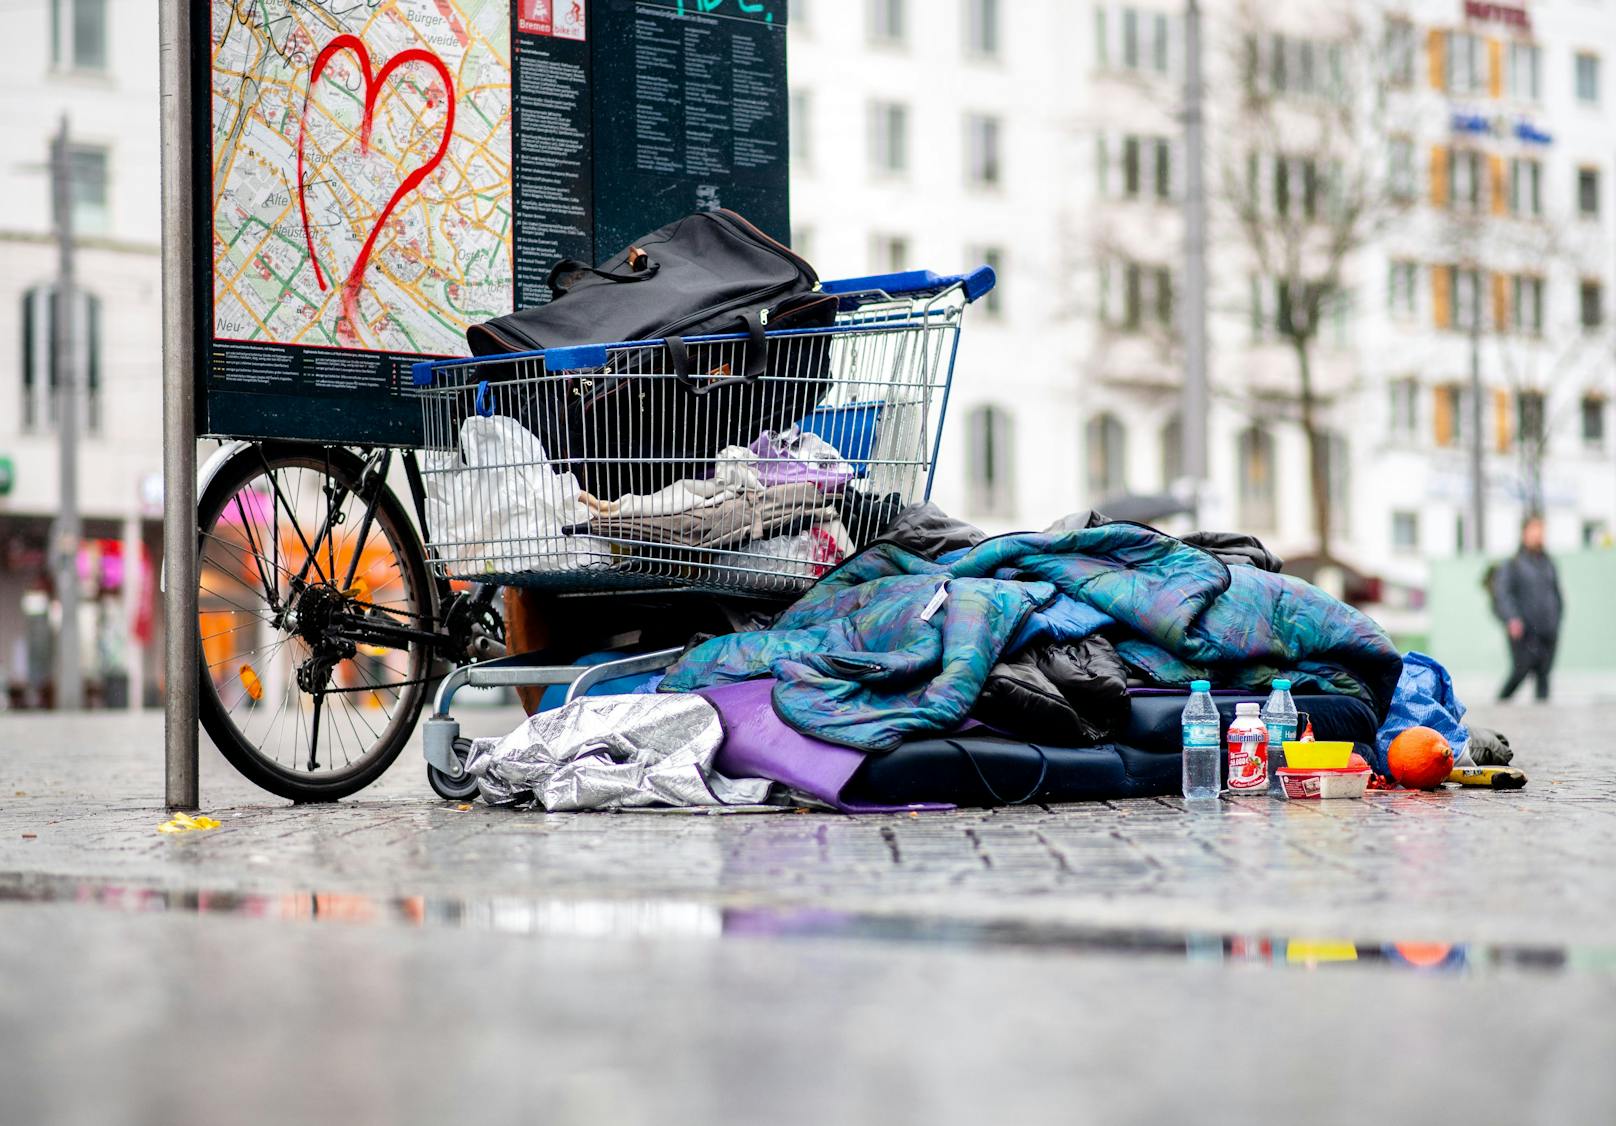 Knapp 700.000 Menschen sind in der EU obdachlos - Tendenz steigend. 